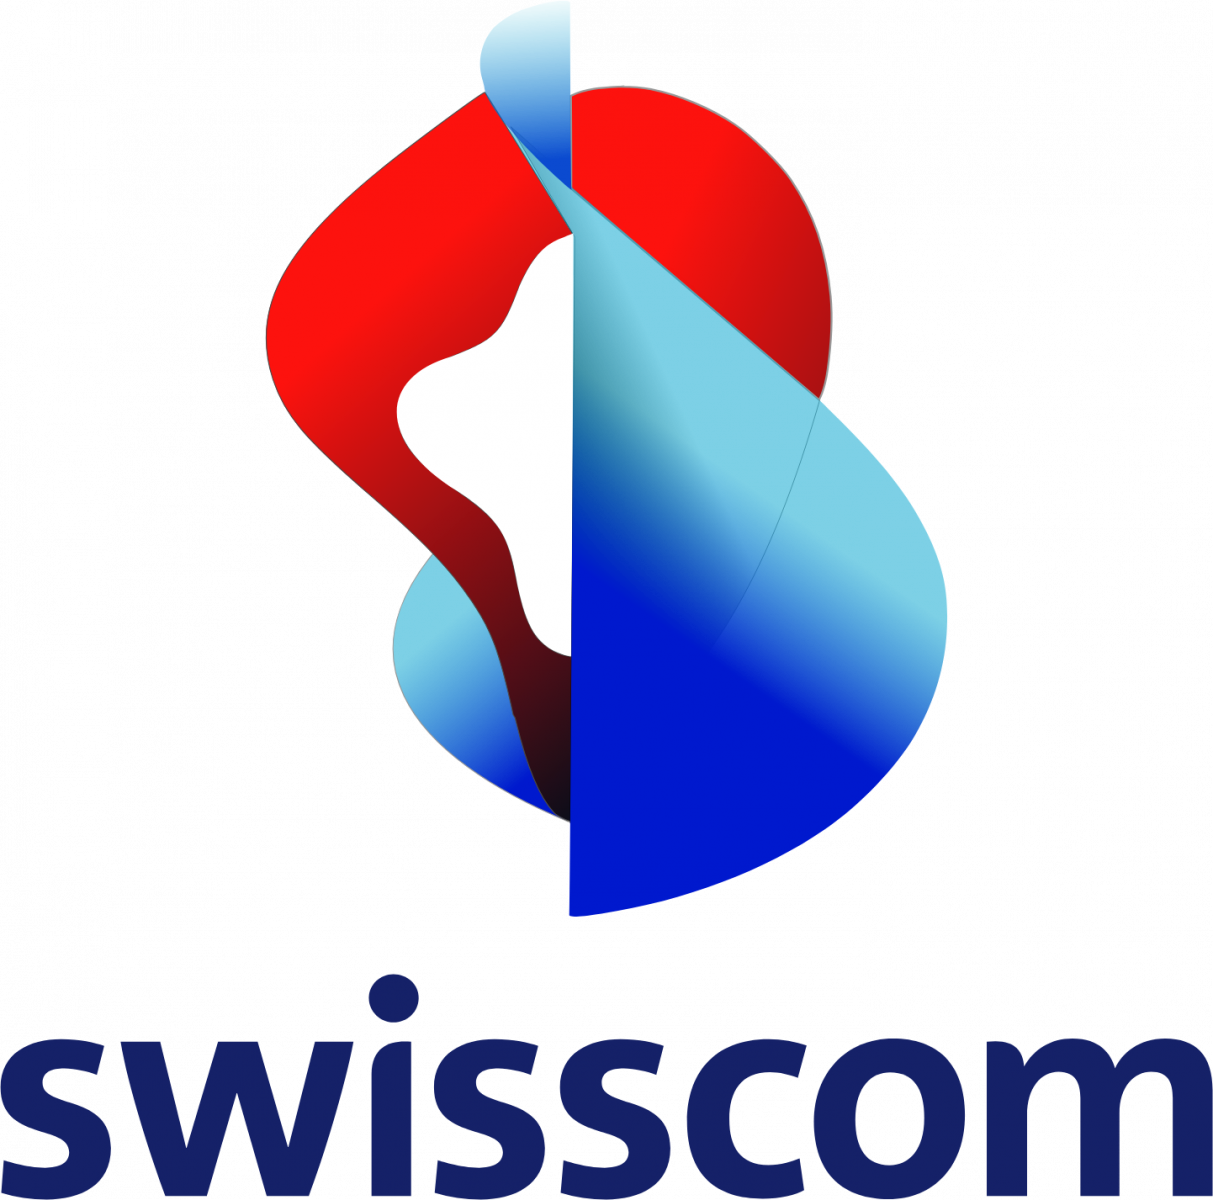 Swisscom it companies in Zurich